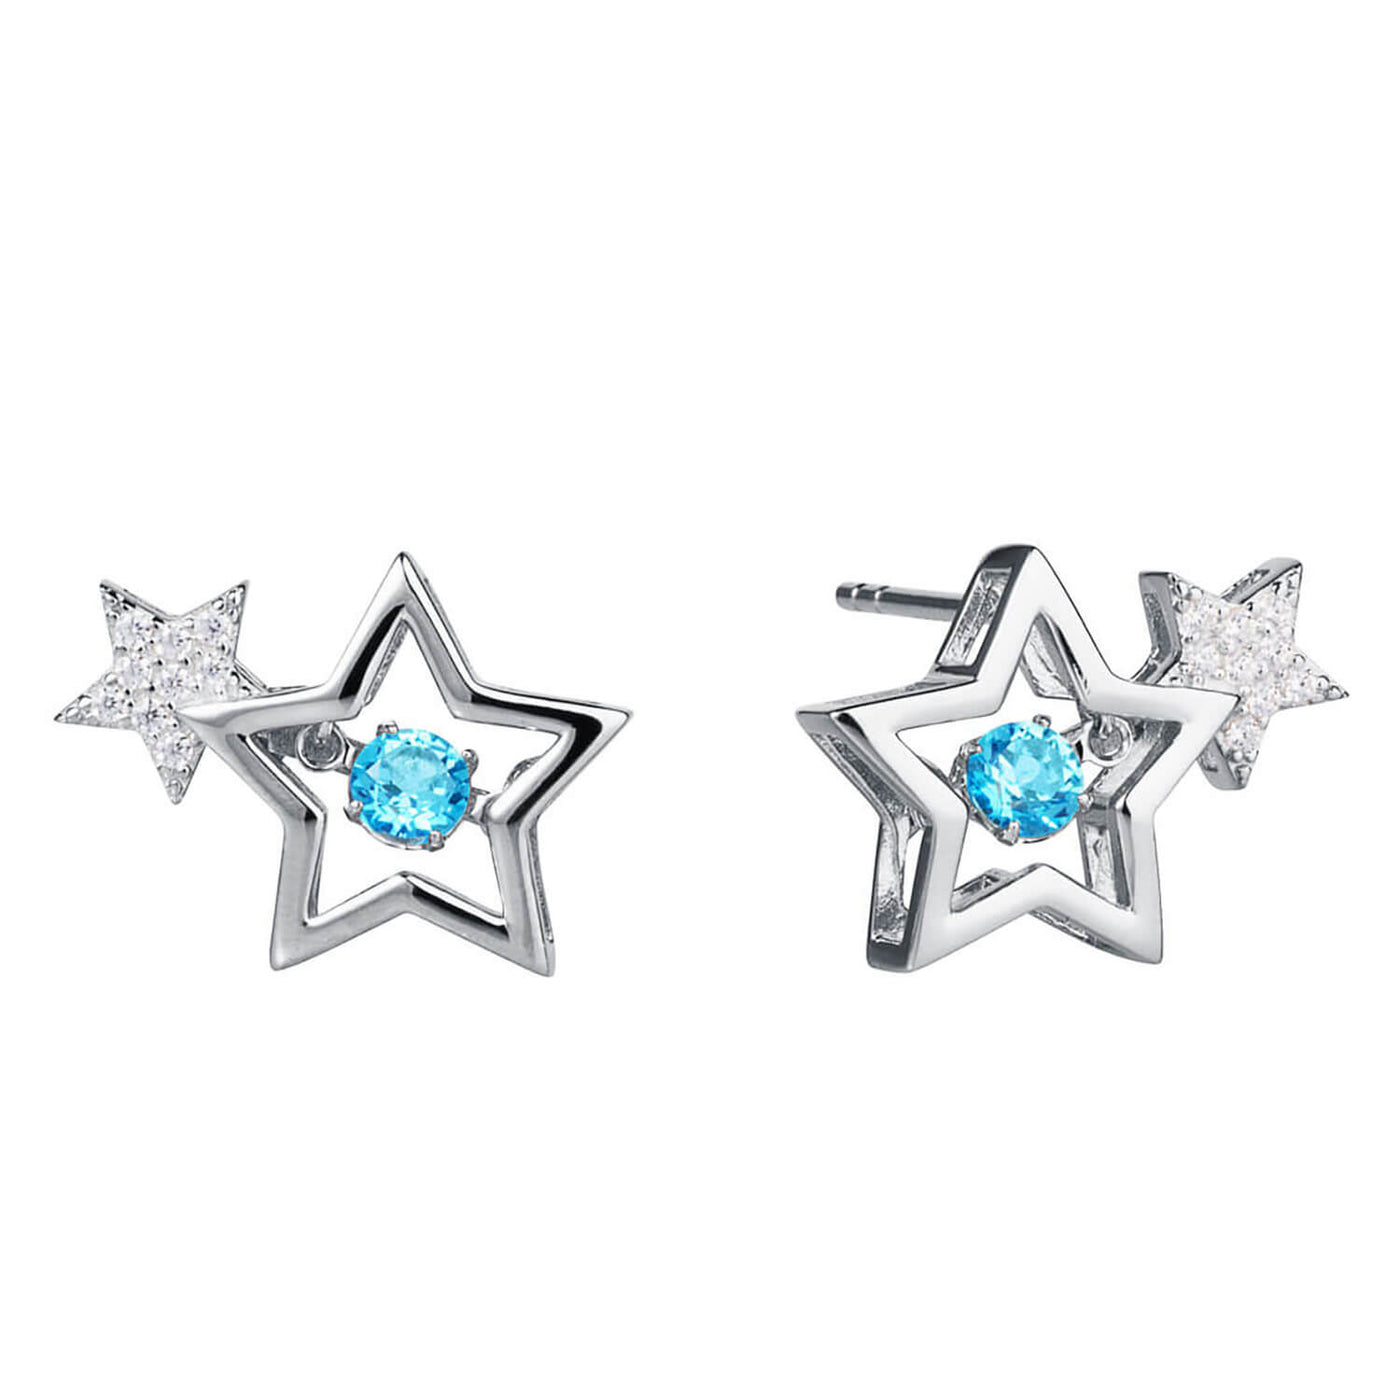 Daniel Steiger Starlight Topaz Platinum Earrings